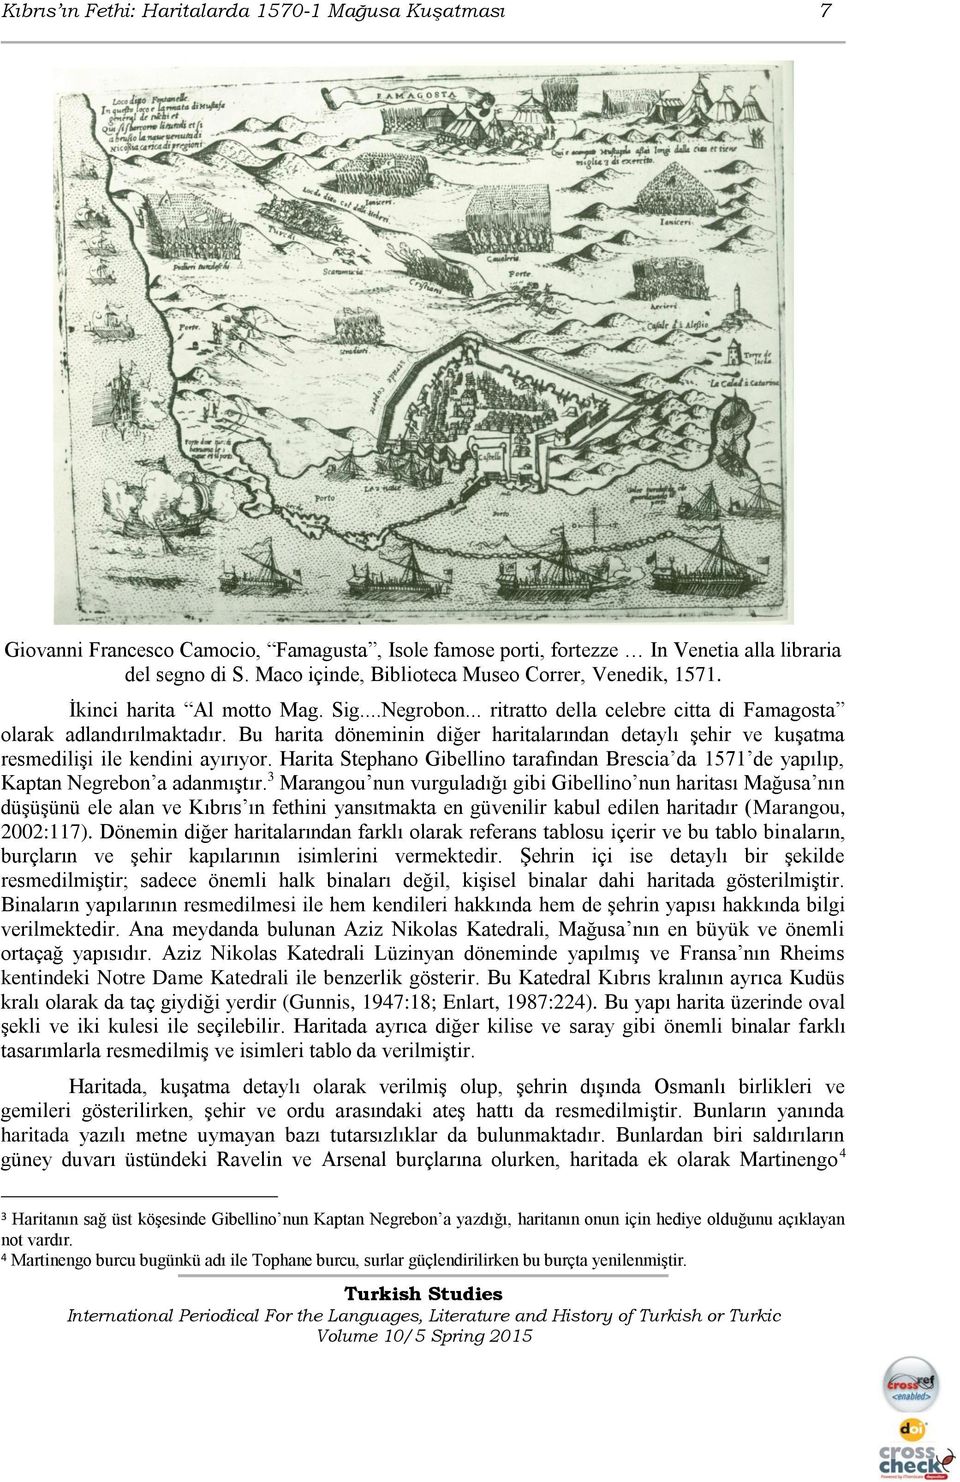 Bu harita döneminin diğer haritalarından detaylı şehir ve kuşatma resmedilişi ile kendini ayırıyor. Harita Stephano Gibellino tarafından Brescia da 1571 de yapılıp, Kaptan Negrebon a adanmıştır.